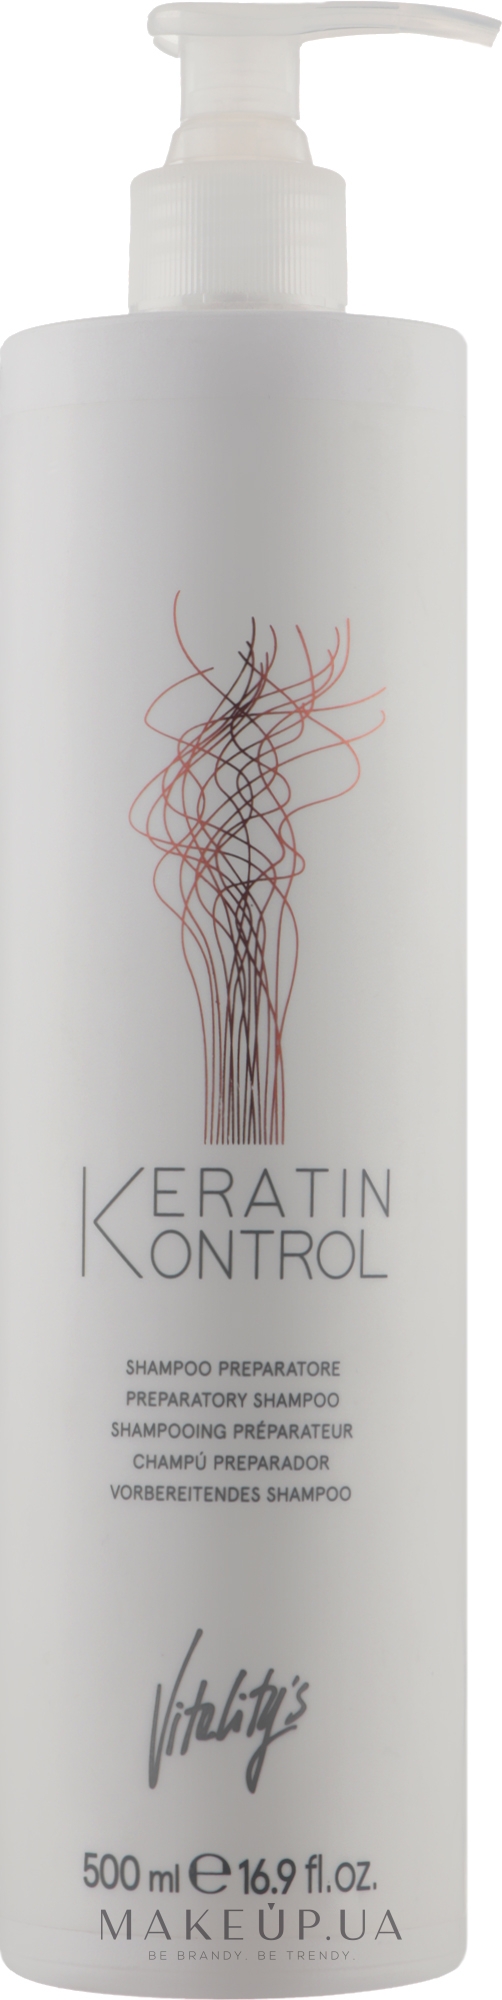 Підготовчий шампунь для волосся - vitality's Keratin Kontrol Preparatory Shampoo — фото 500ml